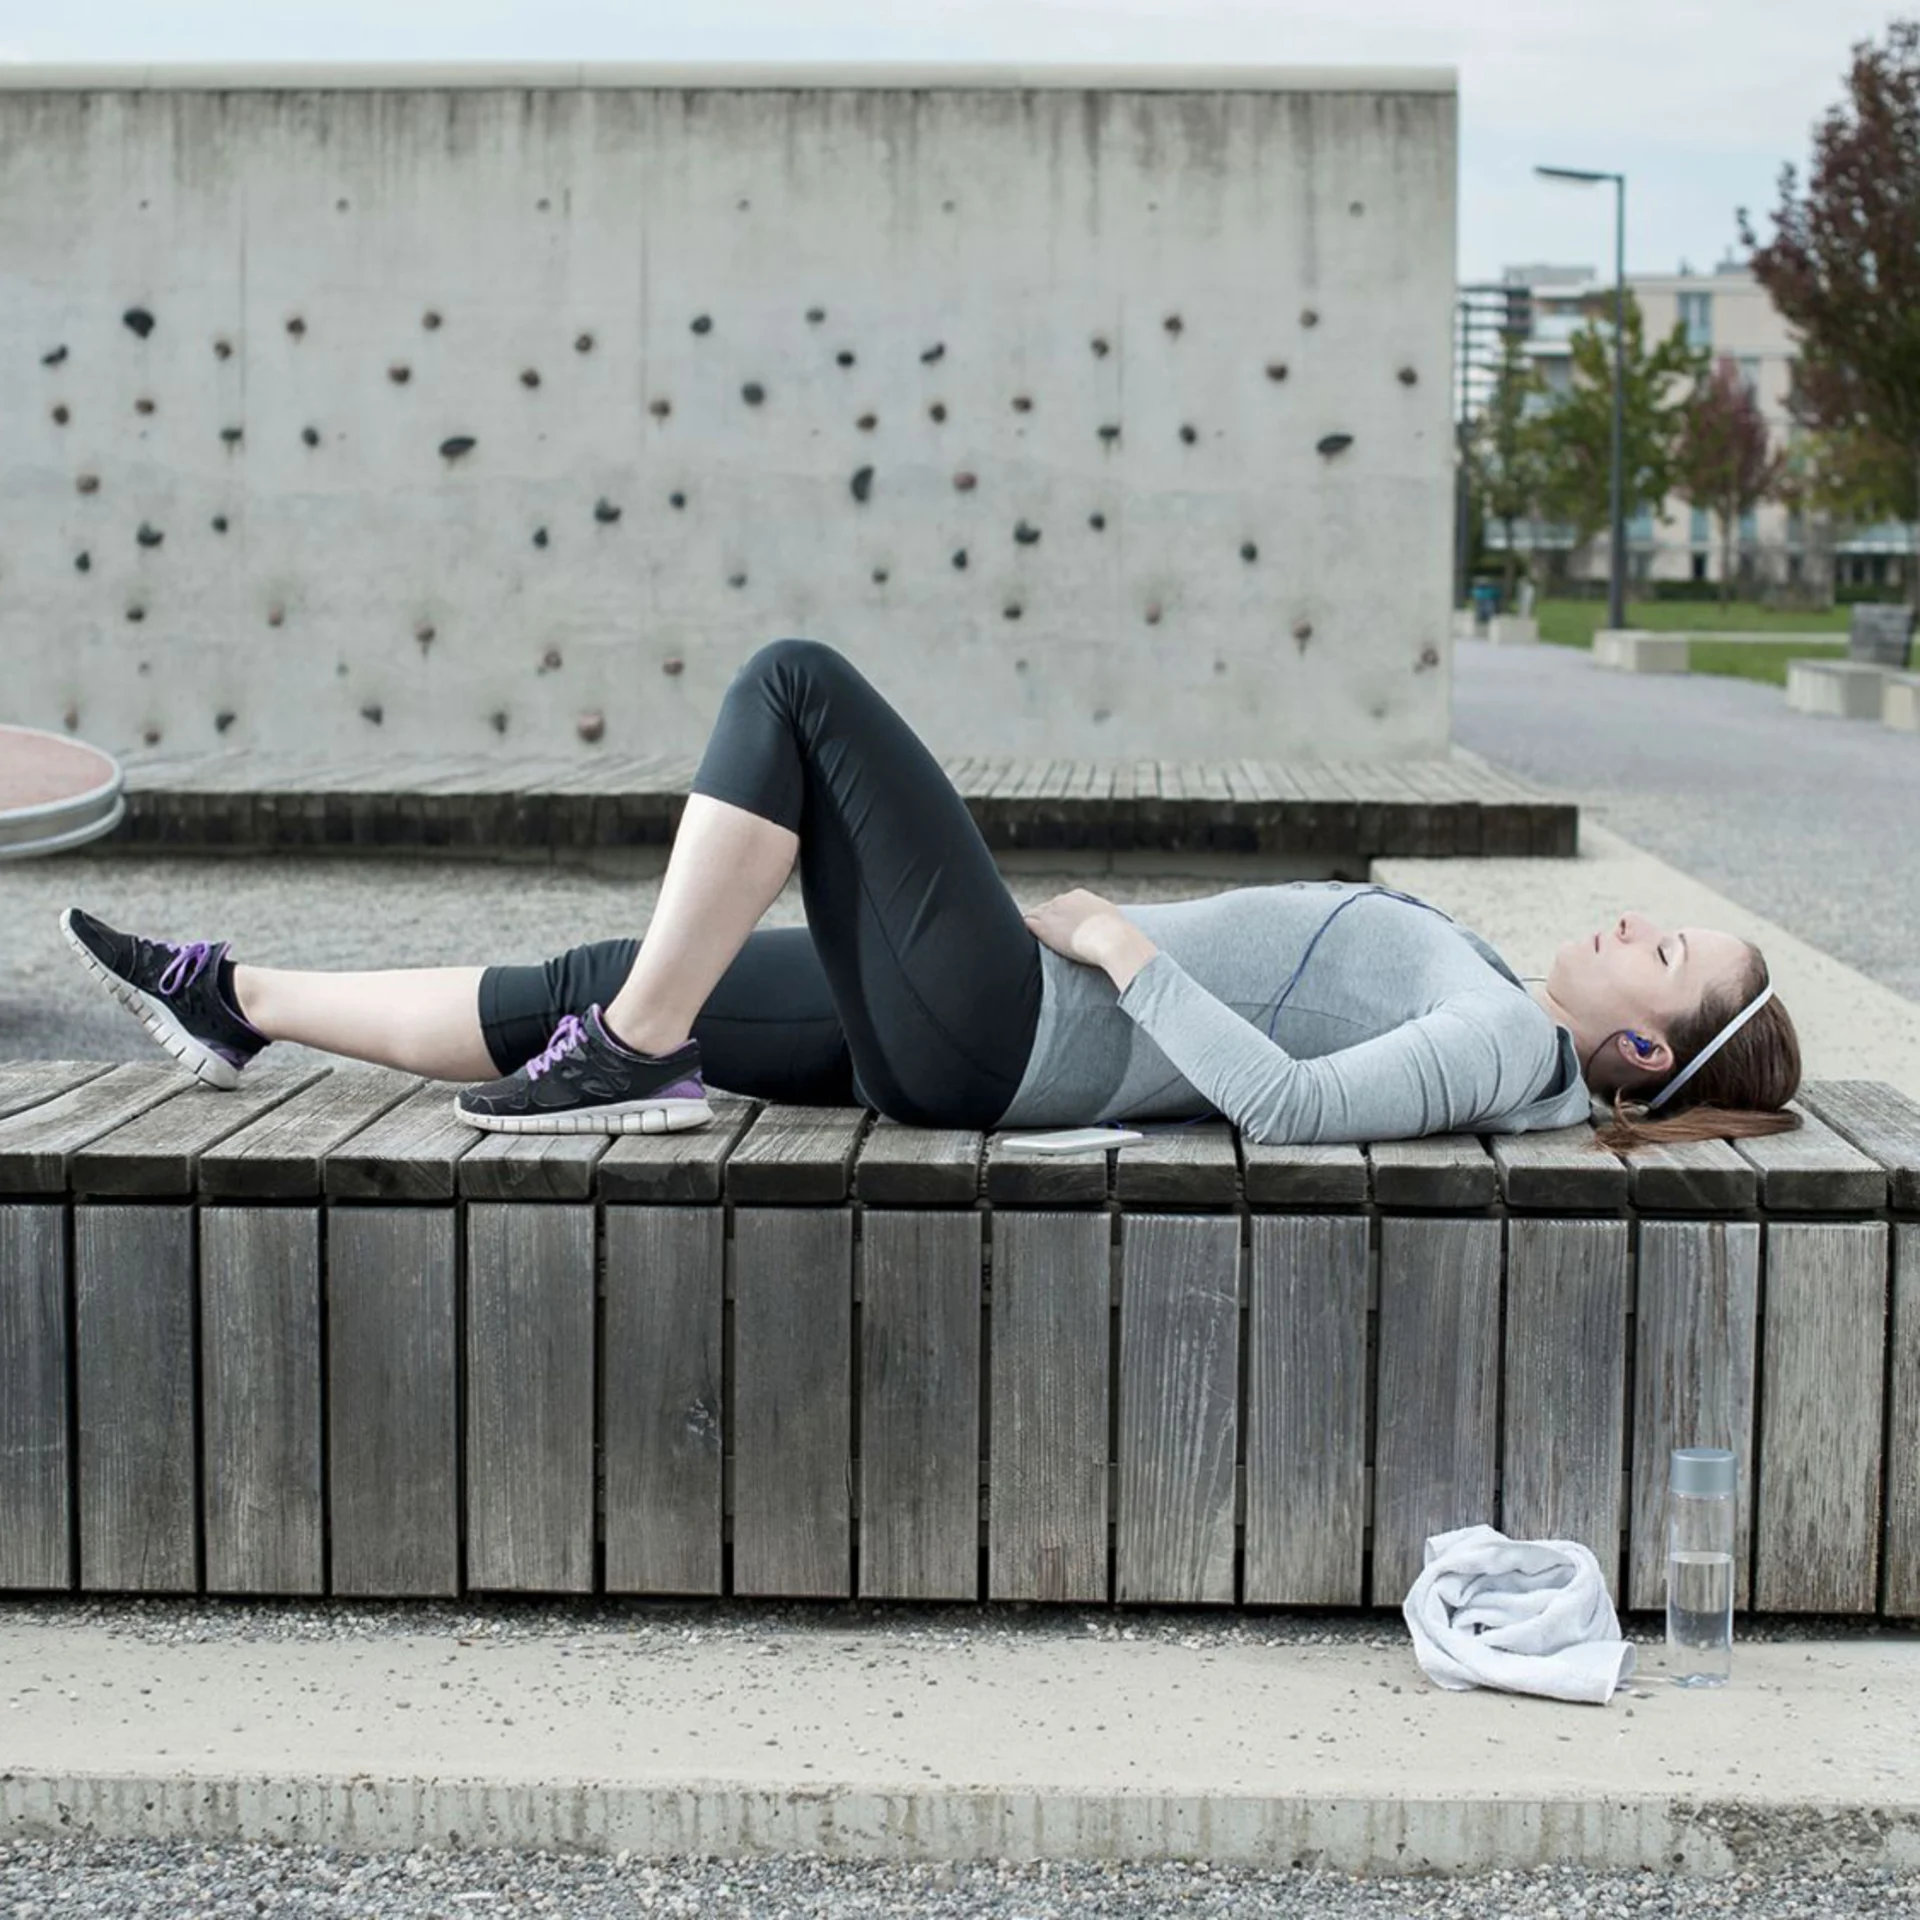 Une femme s'allonge sur un banc après avoir fait de l'exercice